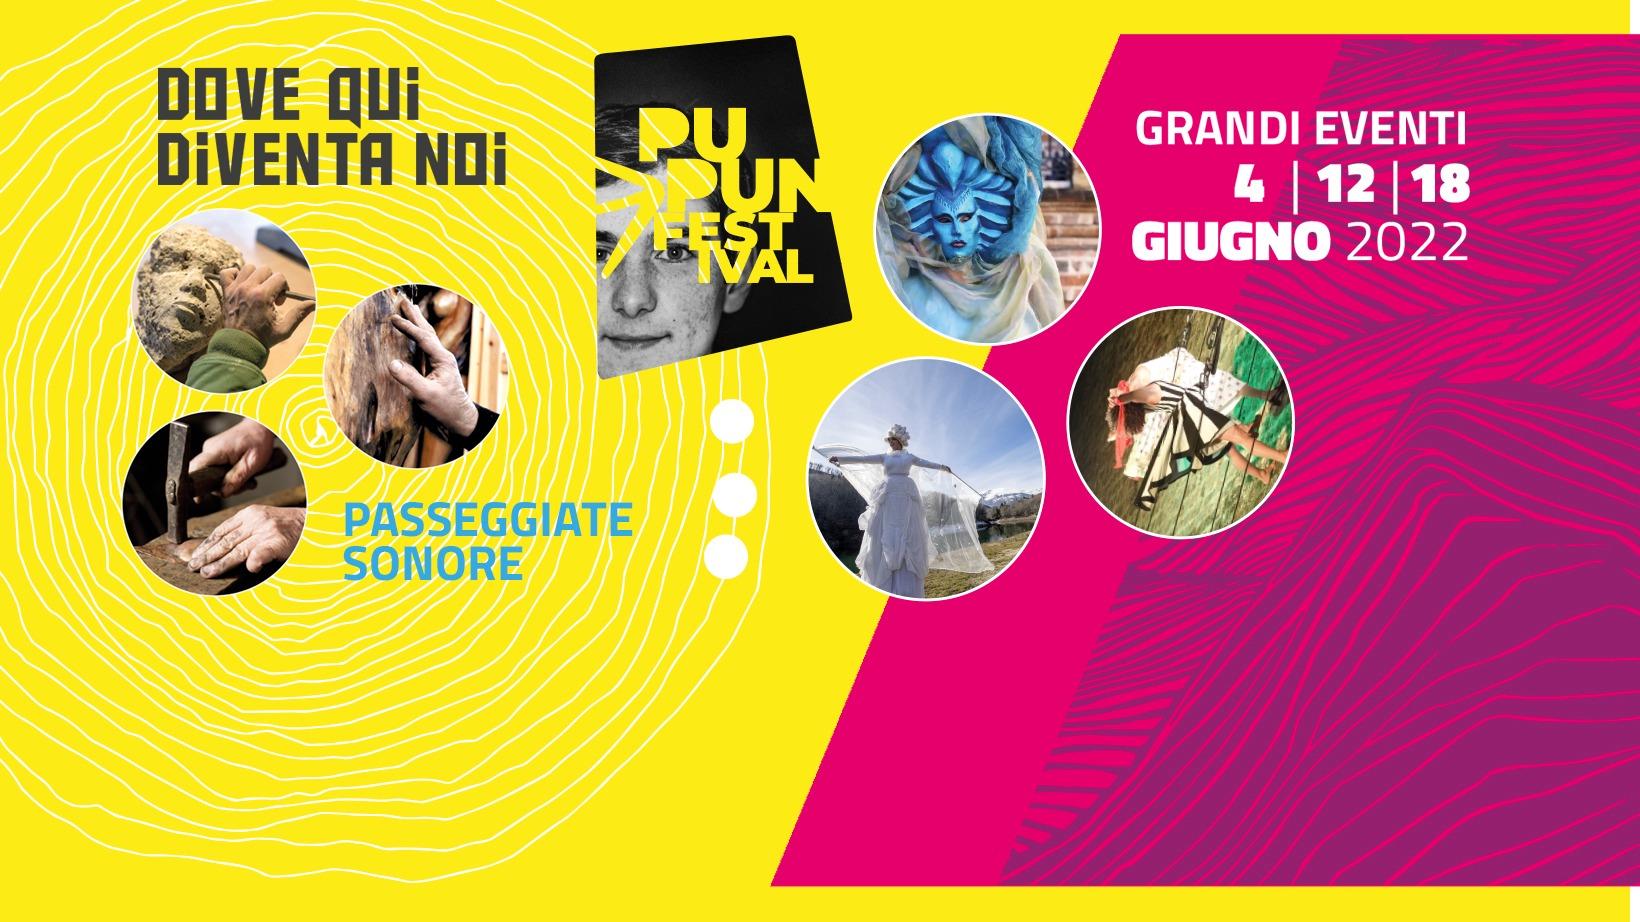 Arriva il weekend lungo del Pupun Festival, tra Castignano e Acquasanta Terme comincia il grande spettacolo